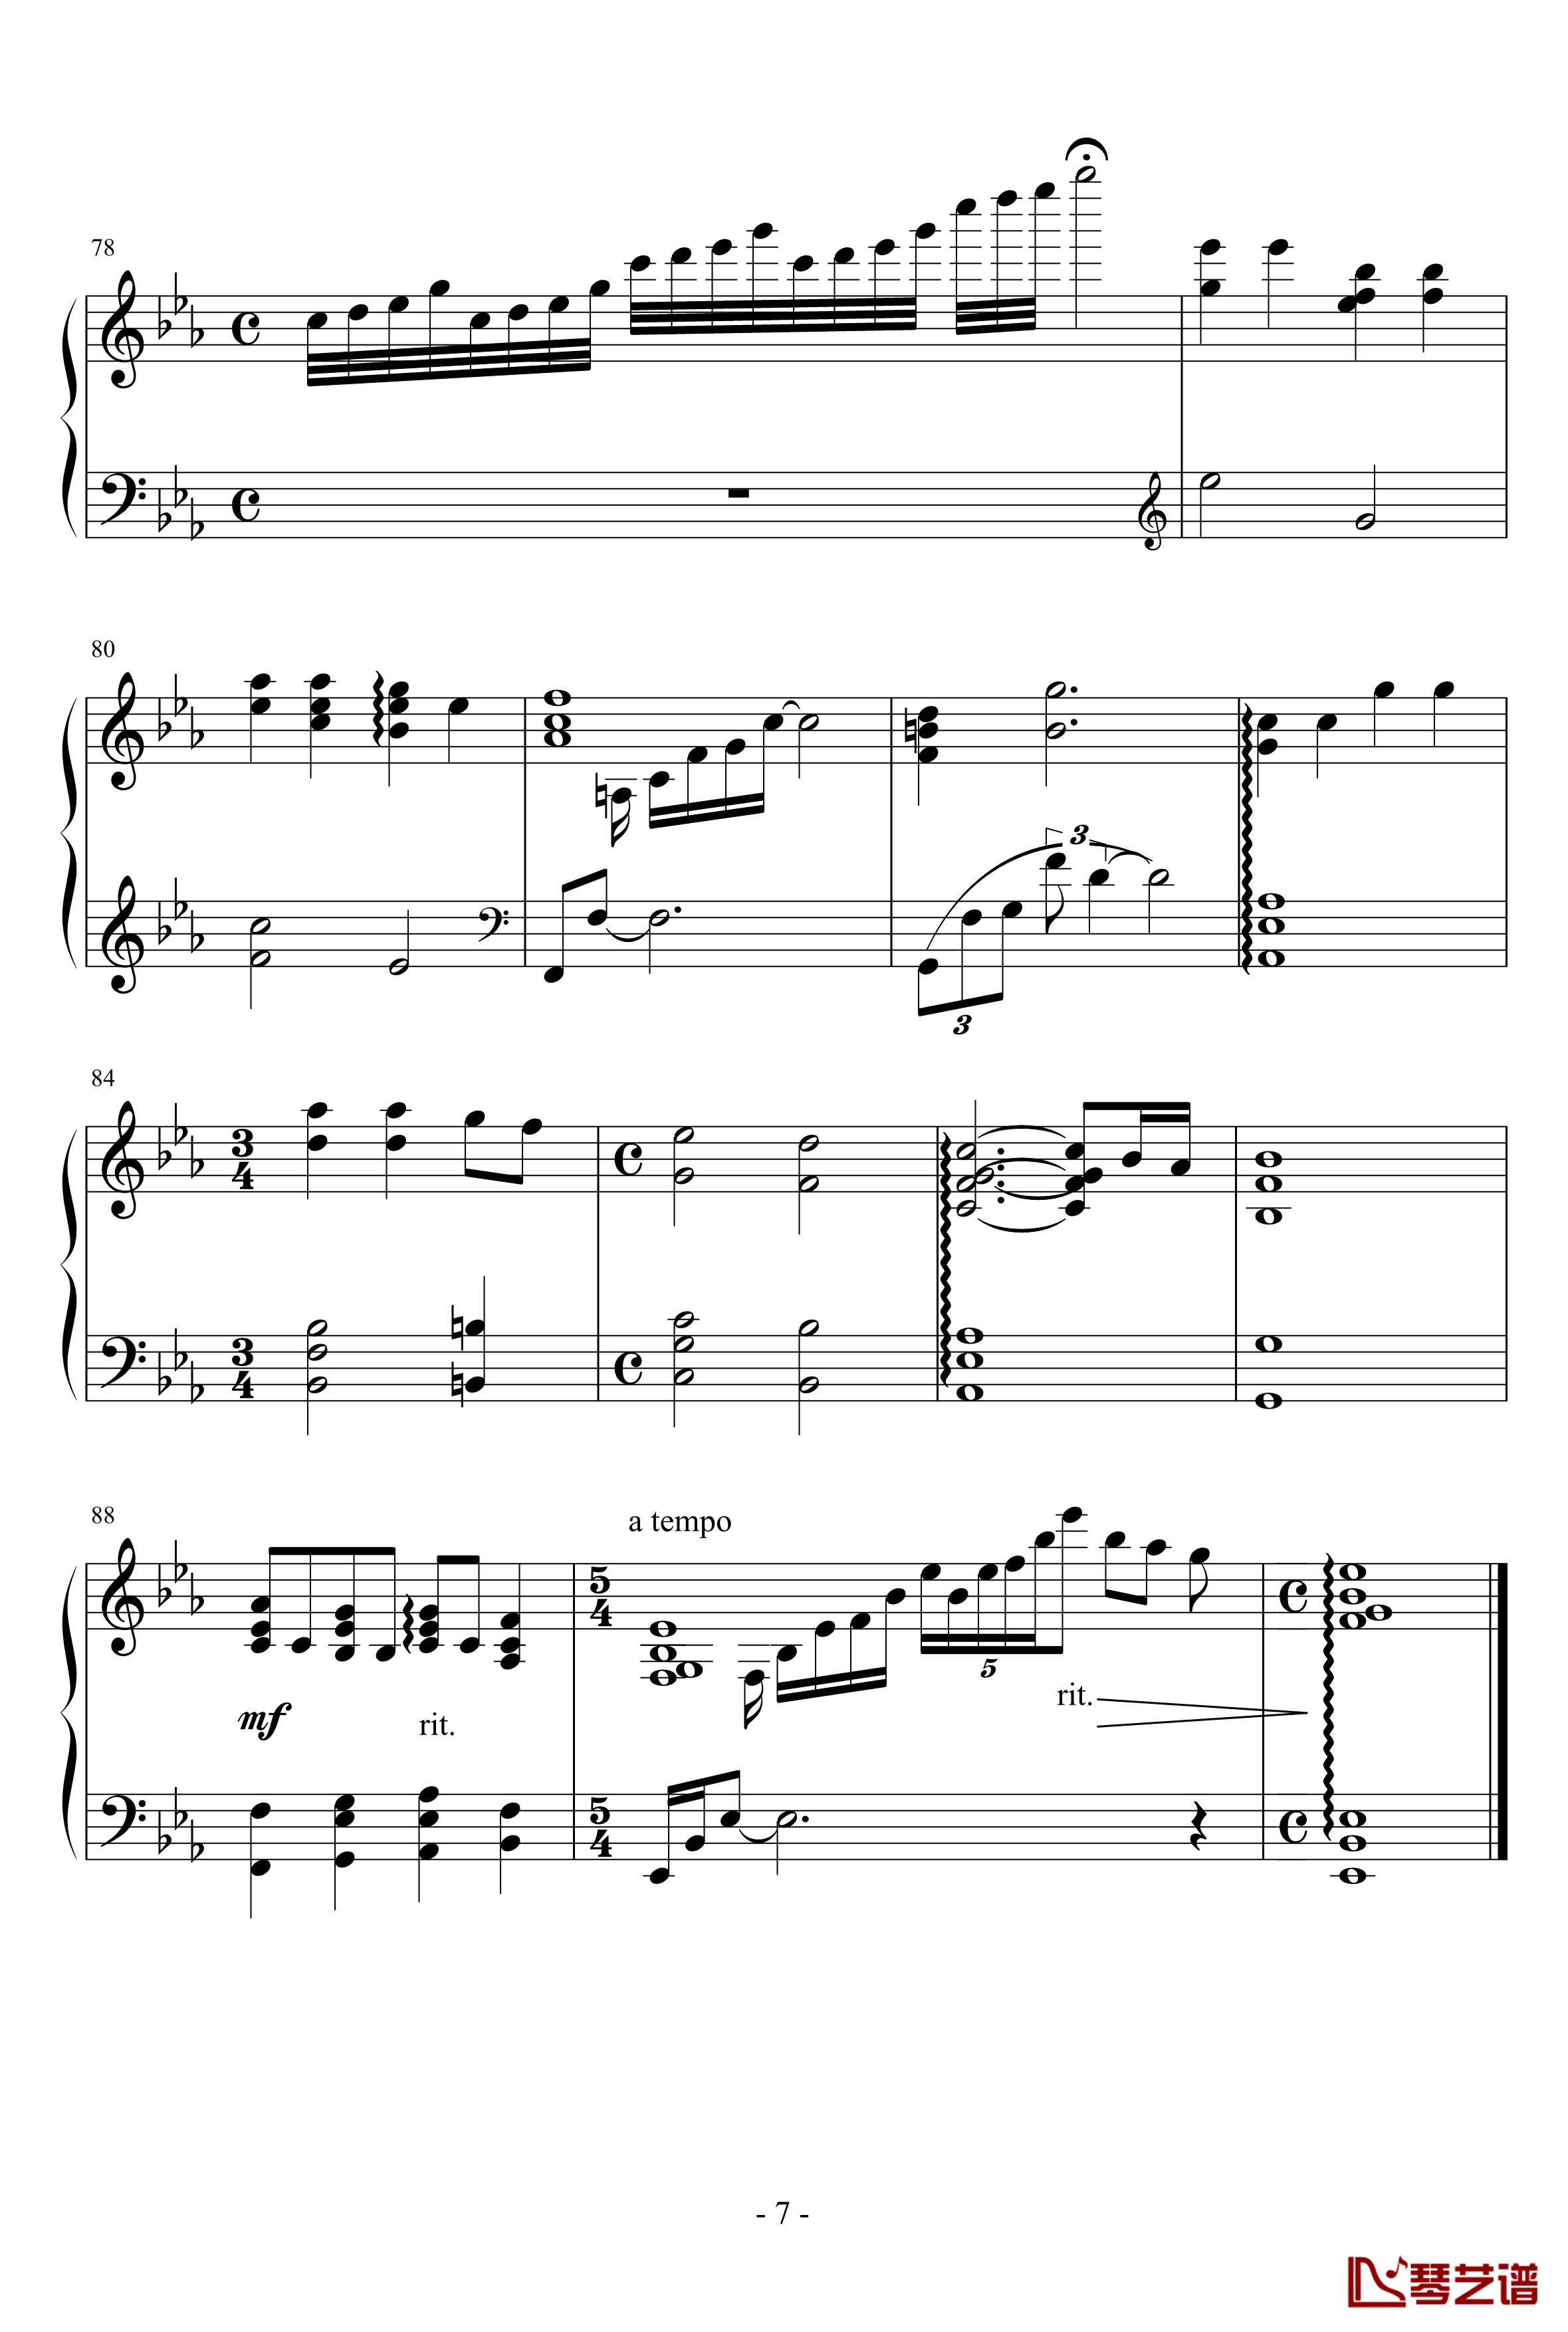 小星星幻想曲钢琴谱-完美版-V.K克